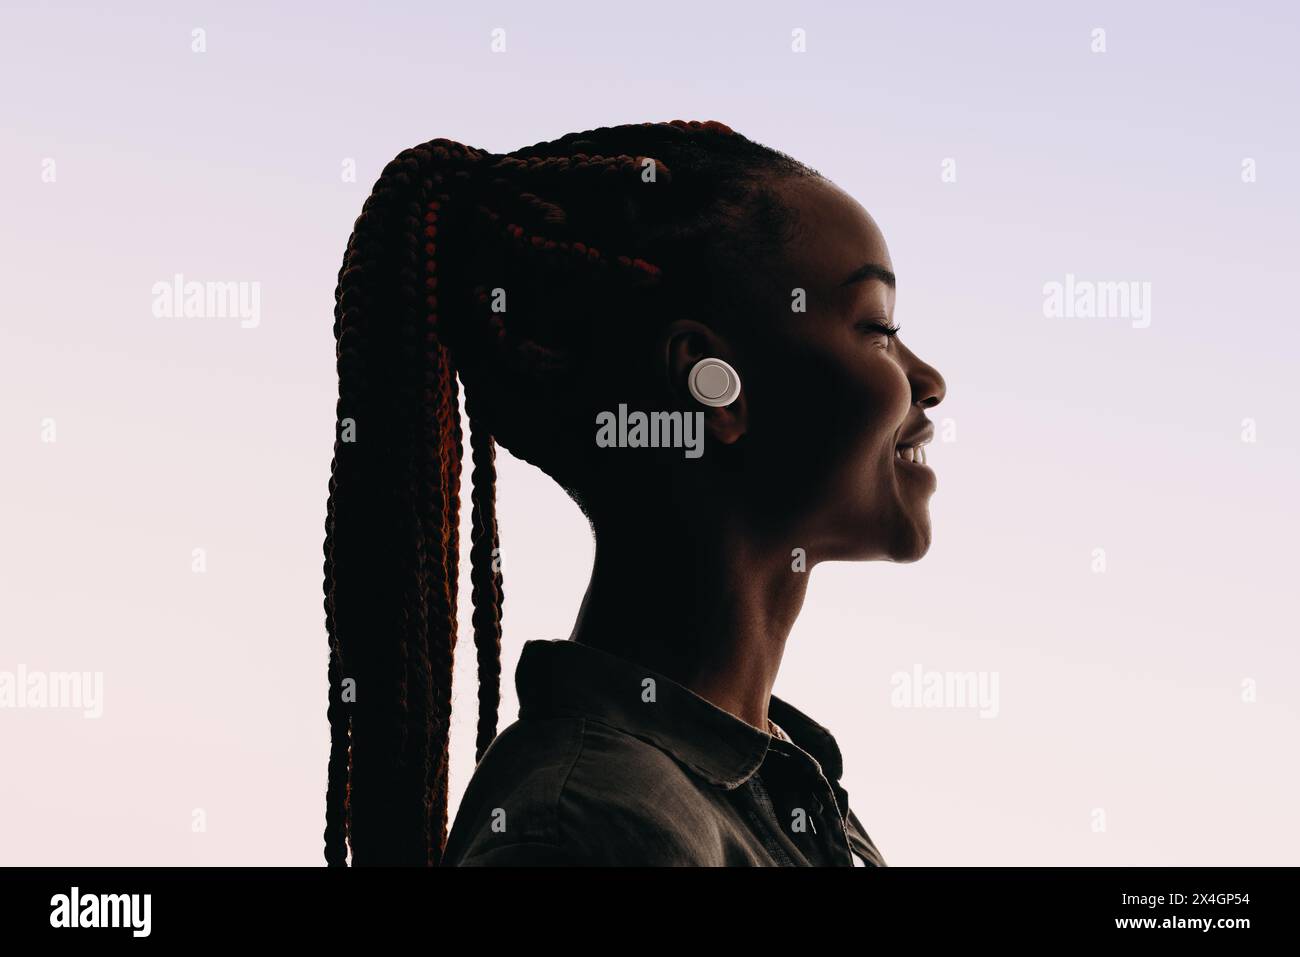 La giovane donna africana, felice di 20 anni, con una vista del profilo rilassata, indossa un'elegante coda di cavallo con trecce. Ascolta la musica in modalità wireless. Foto Stock